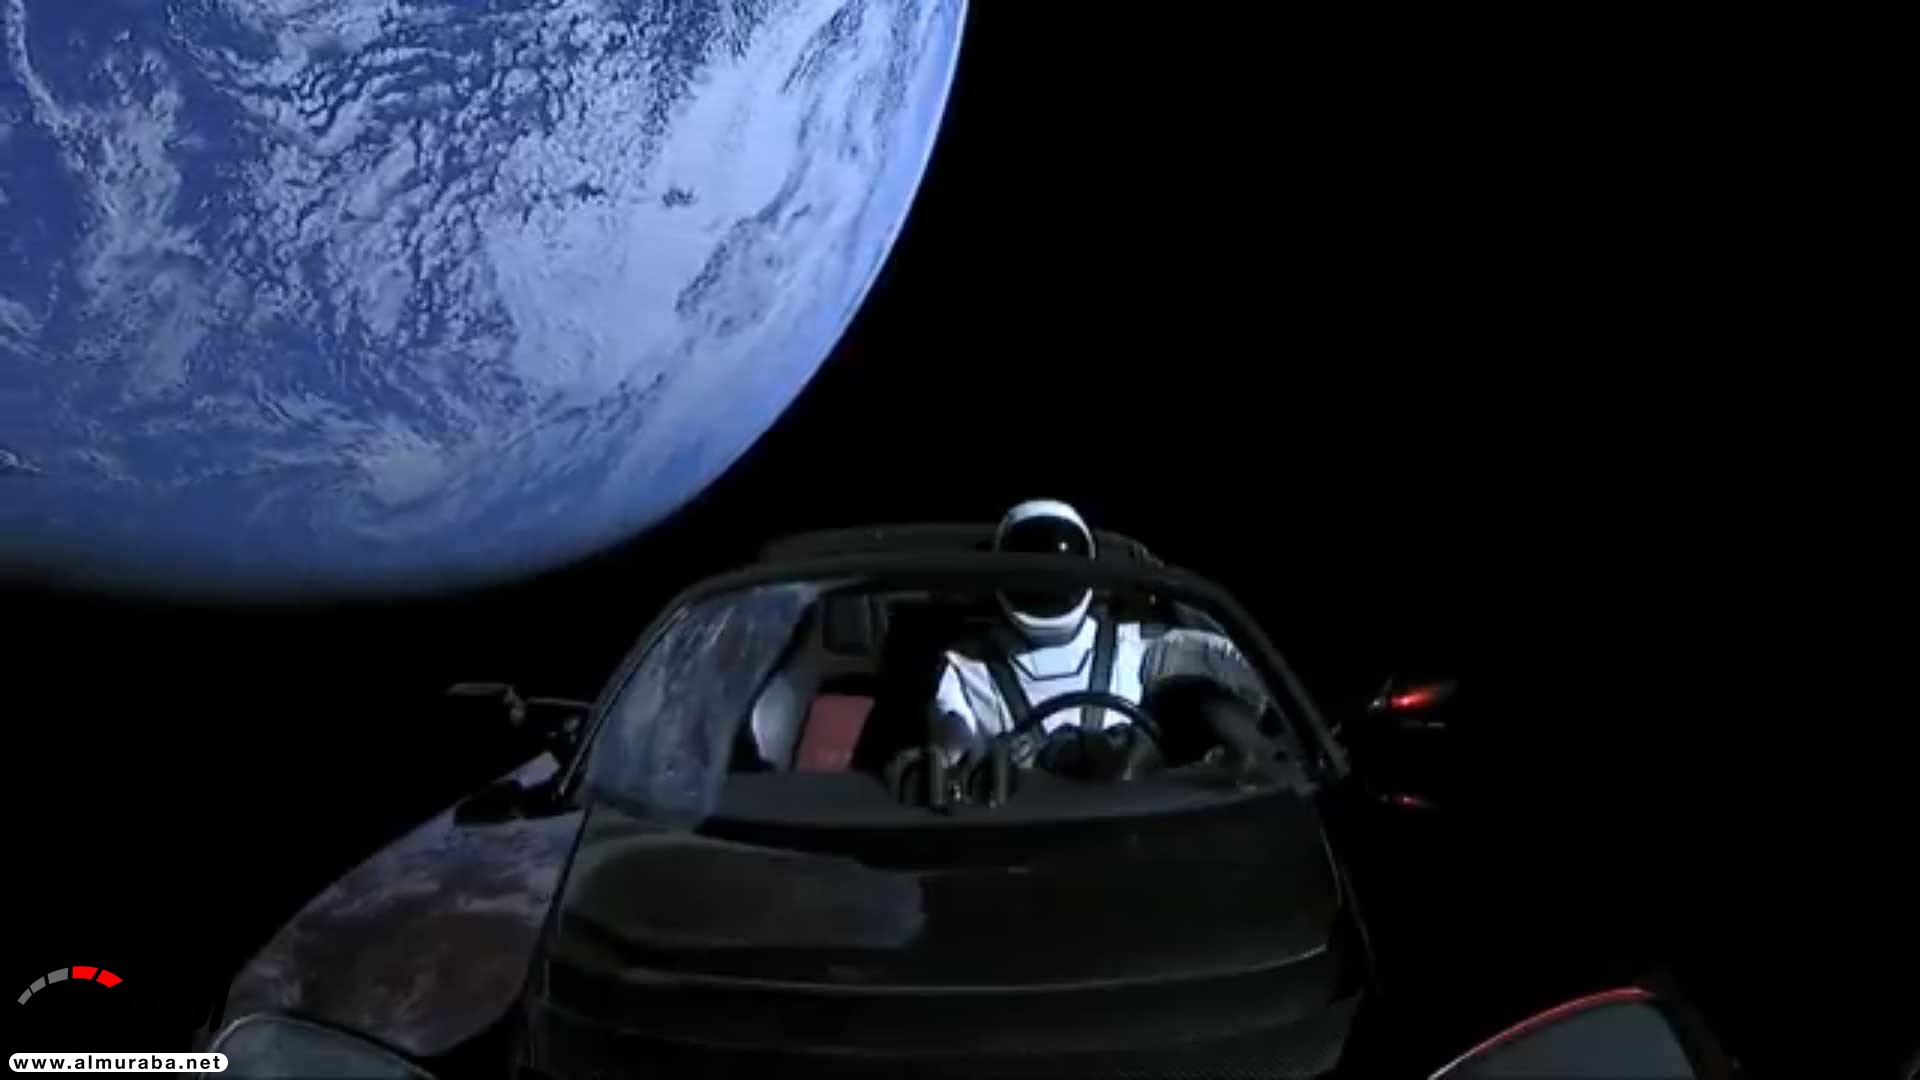 "بالفيديو والصور" إيلون ماسك يطلق تيسلا رودستر إلى المريخ في أقوى صاروخ بالعالم 32